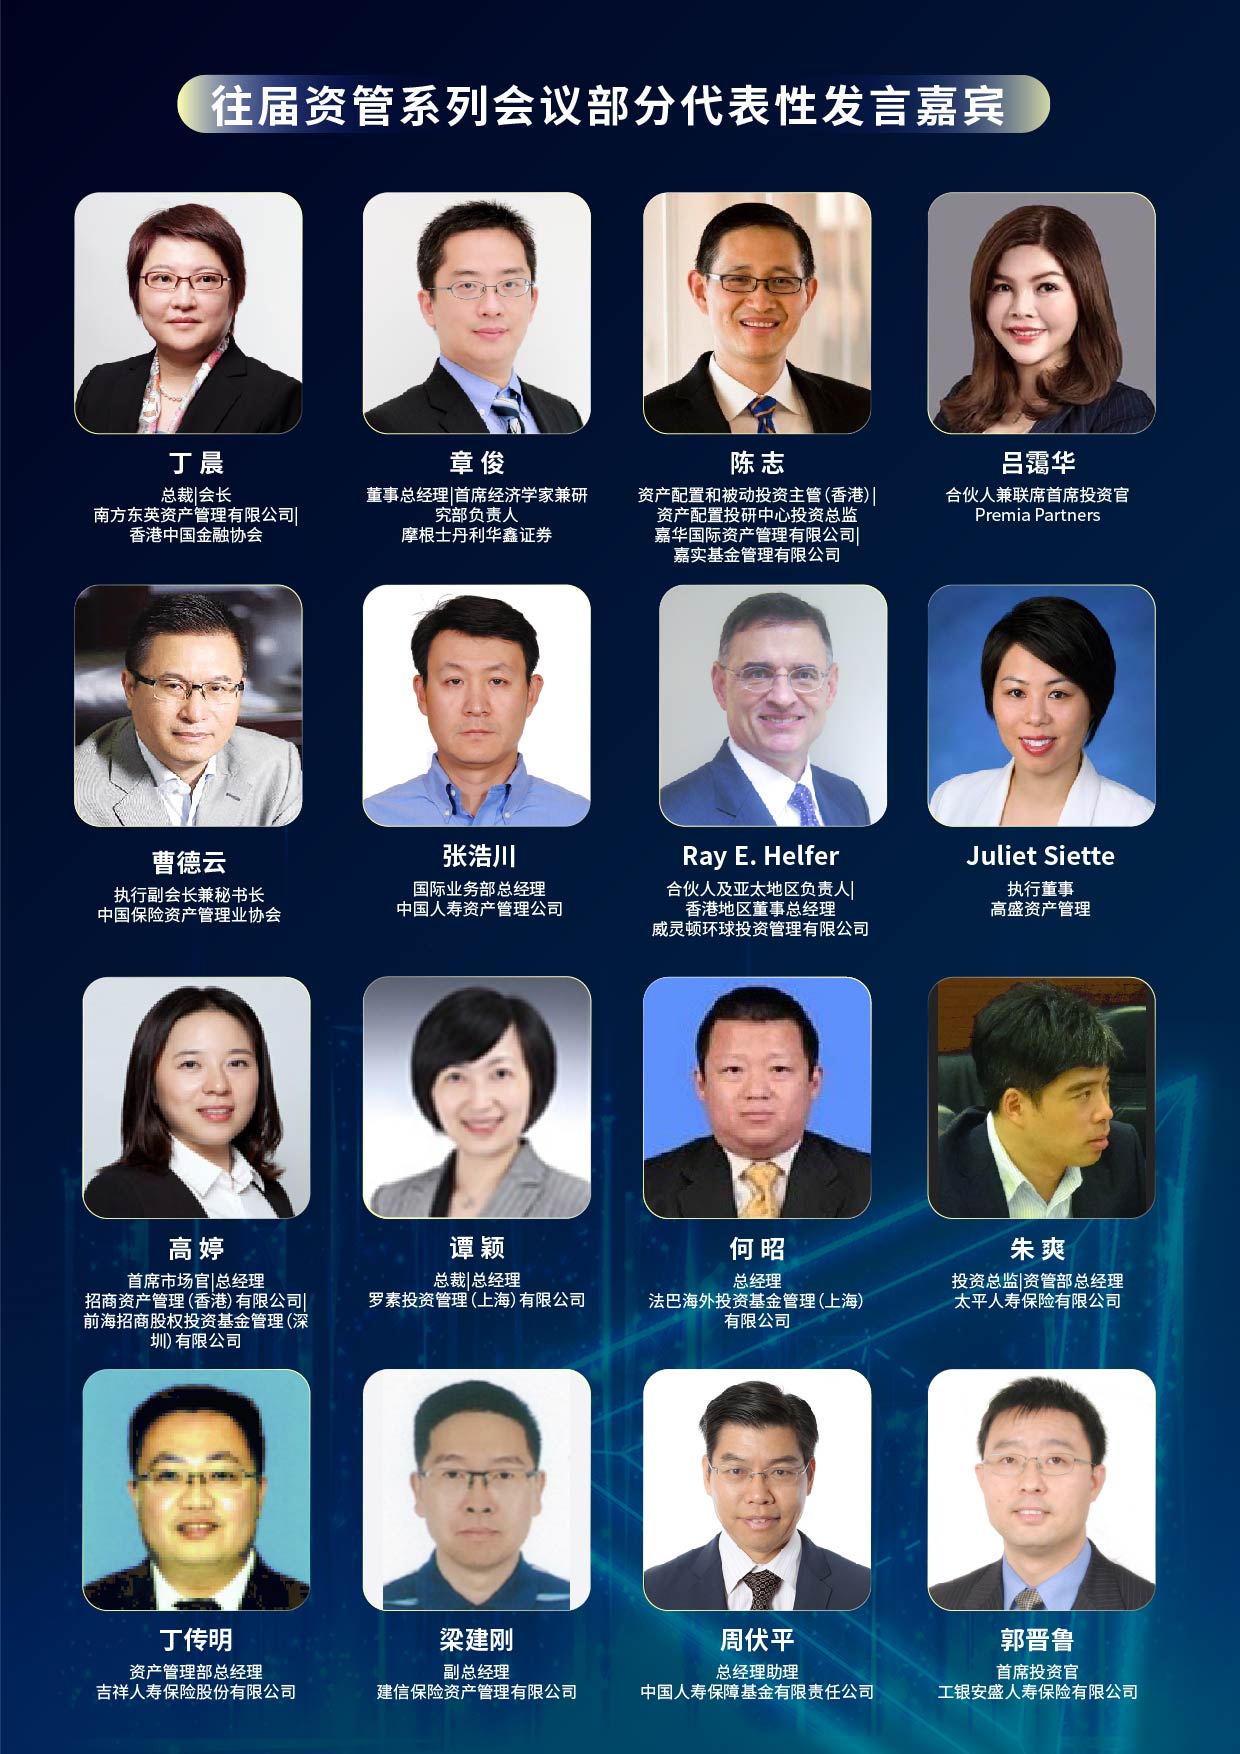 AMTech CHINA 2023 中国资产管理科技创新峰会